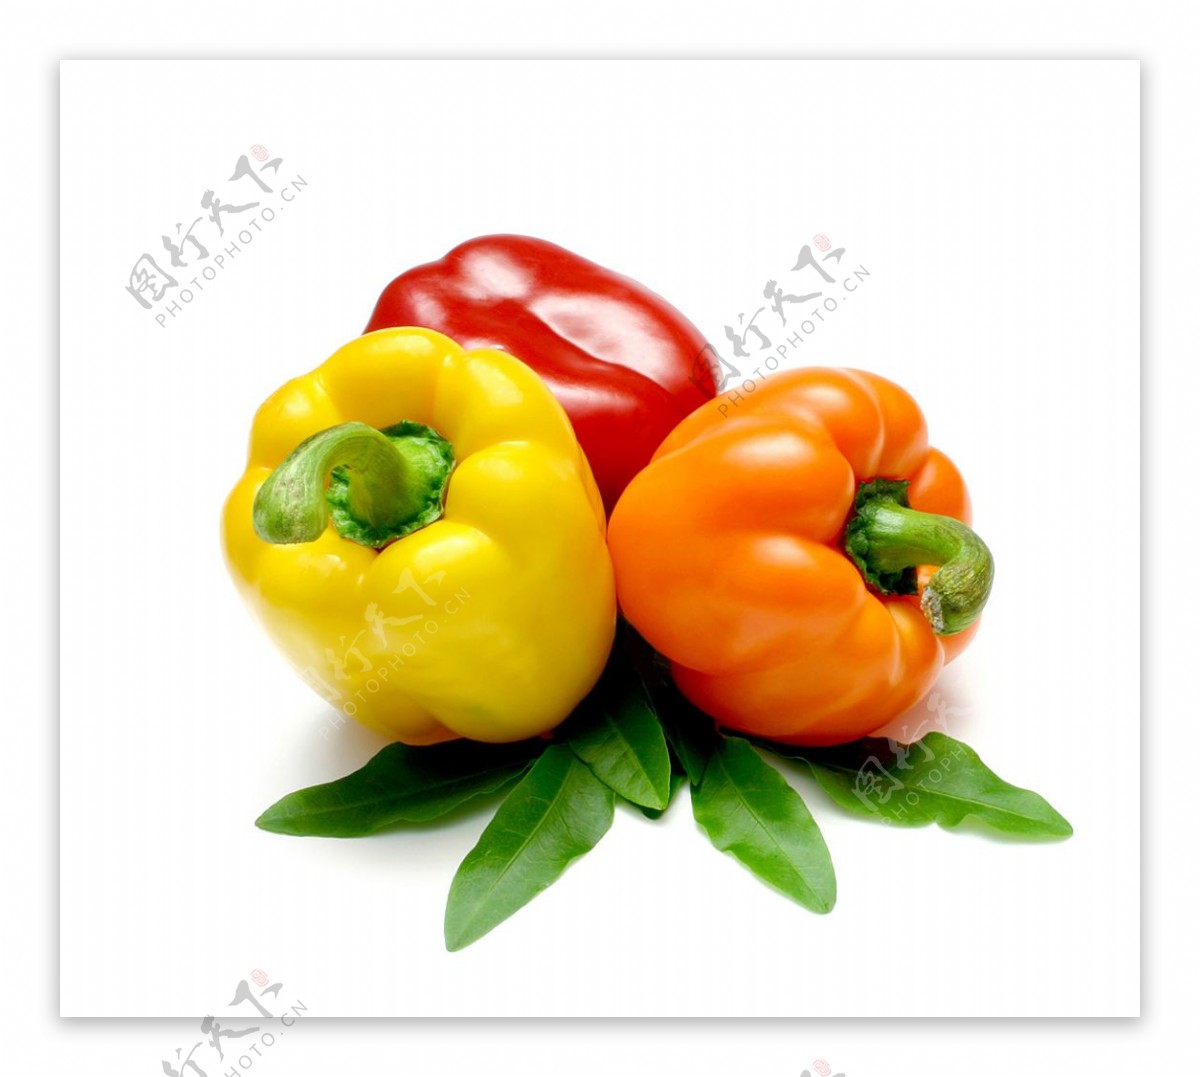 辣椒蔬菜图片